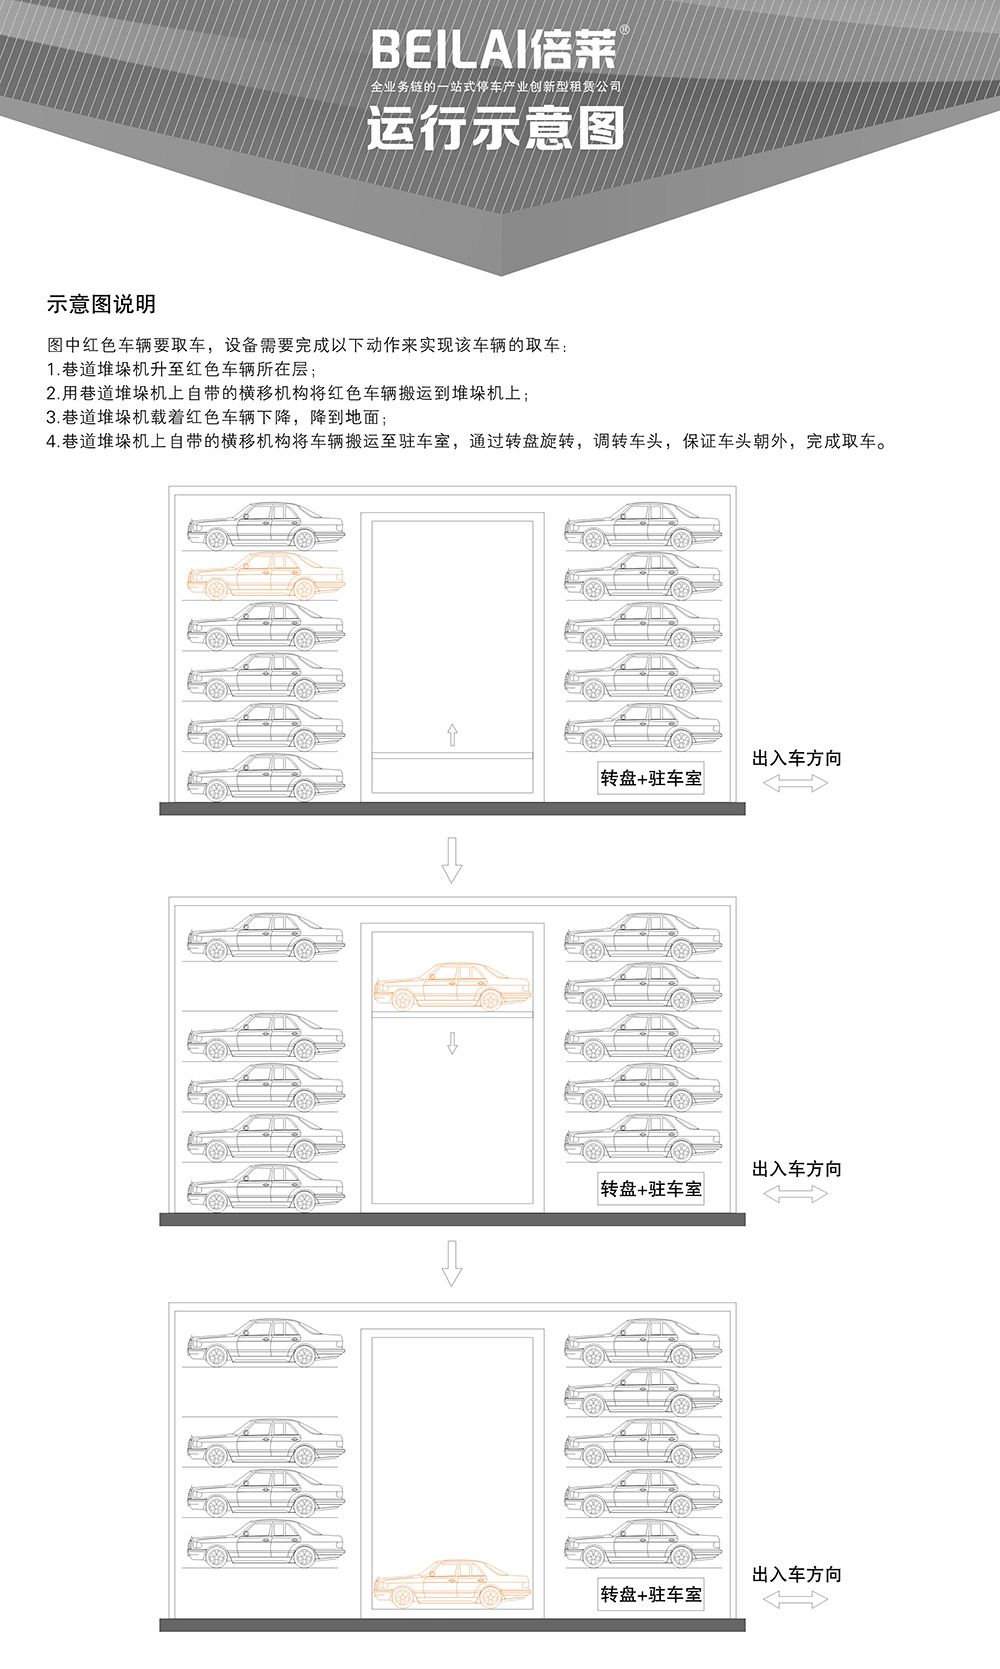 贵州贵阳巷道堆垛立体停车设备运行示意图.jpg